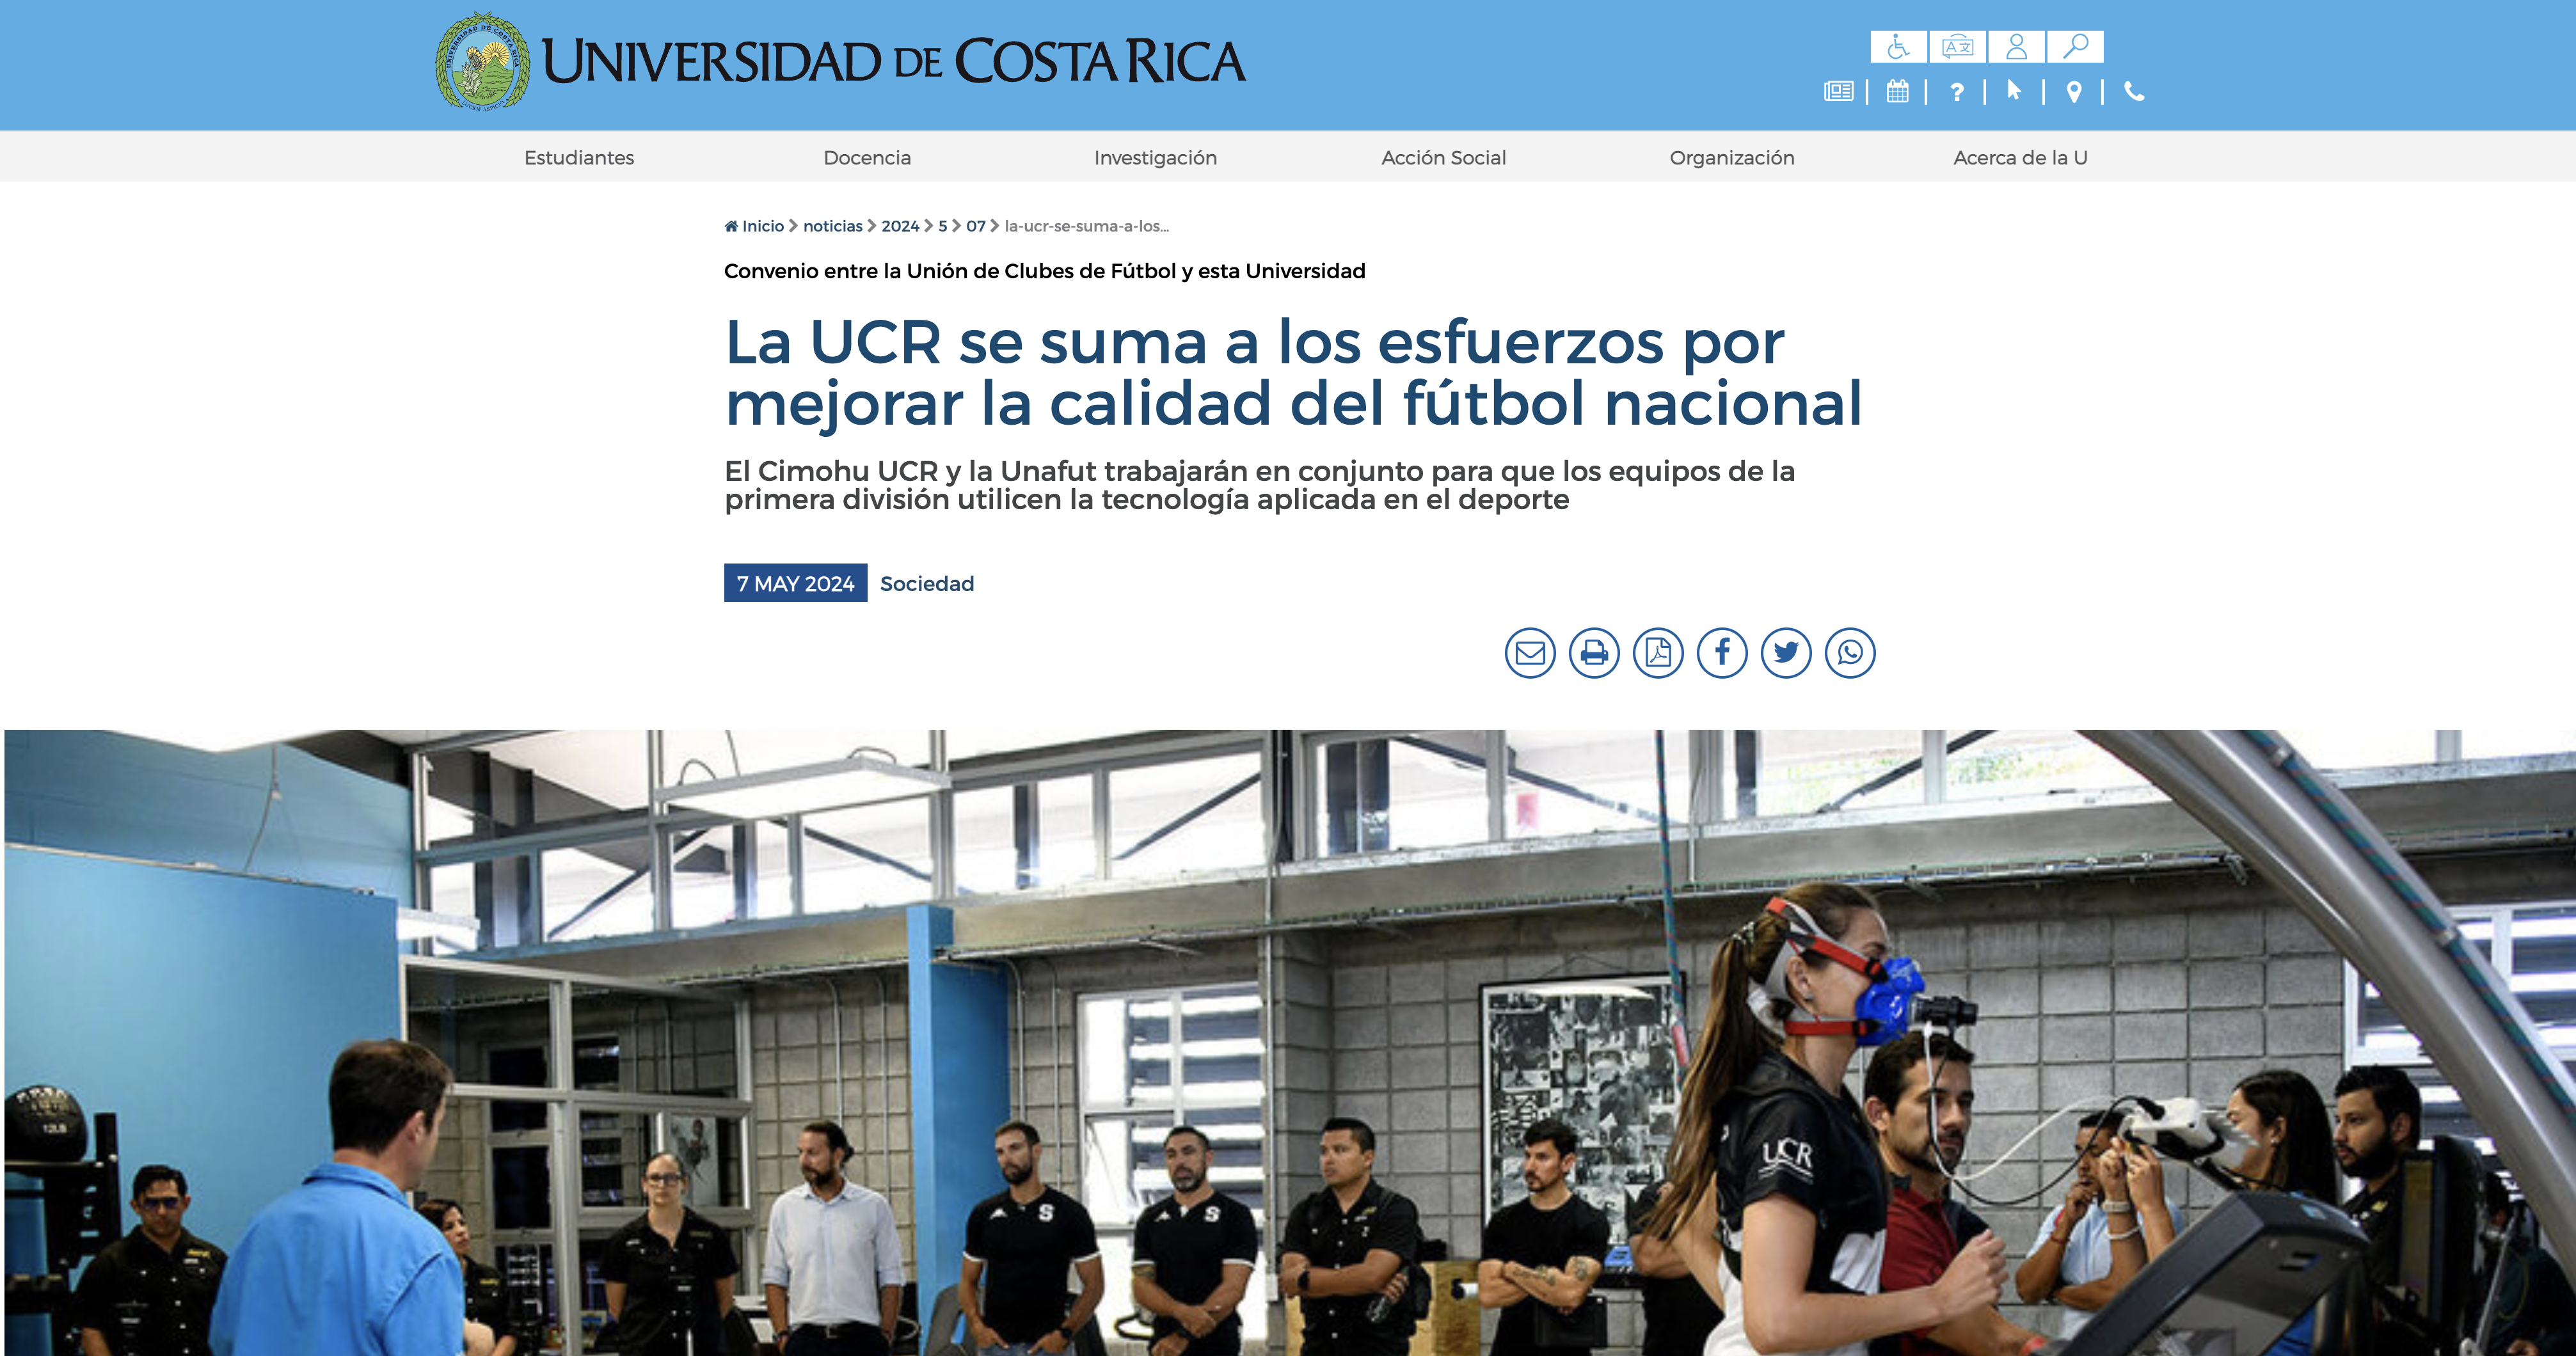 La UCR se suma a los esfuerzos por mejorar la calidad del fútbol nacional